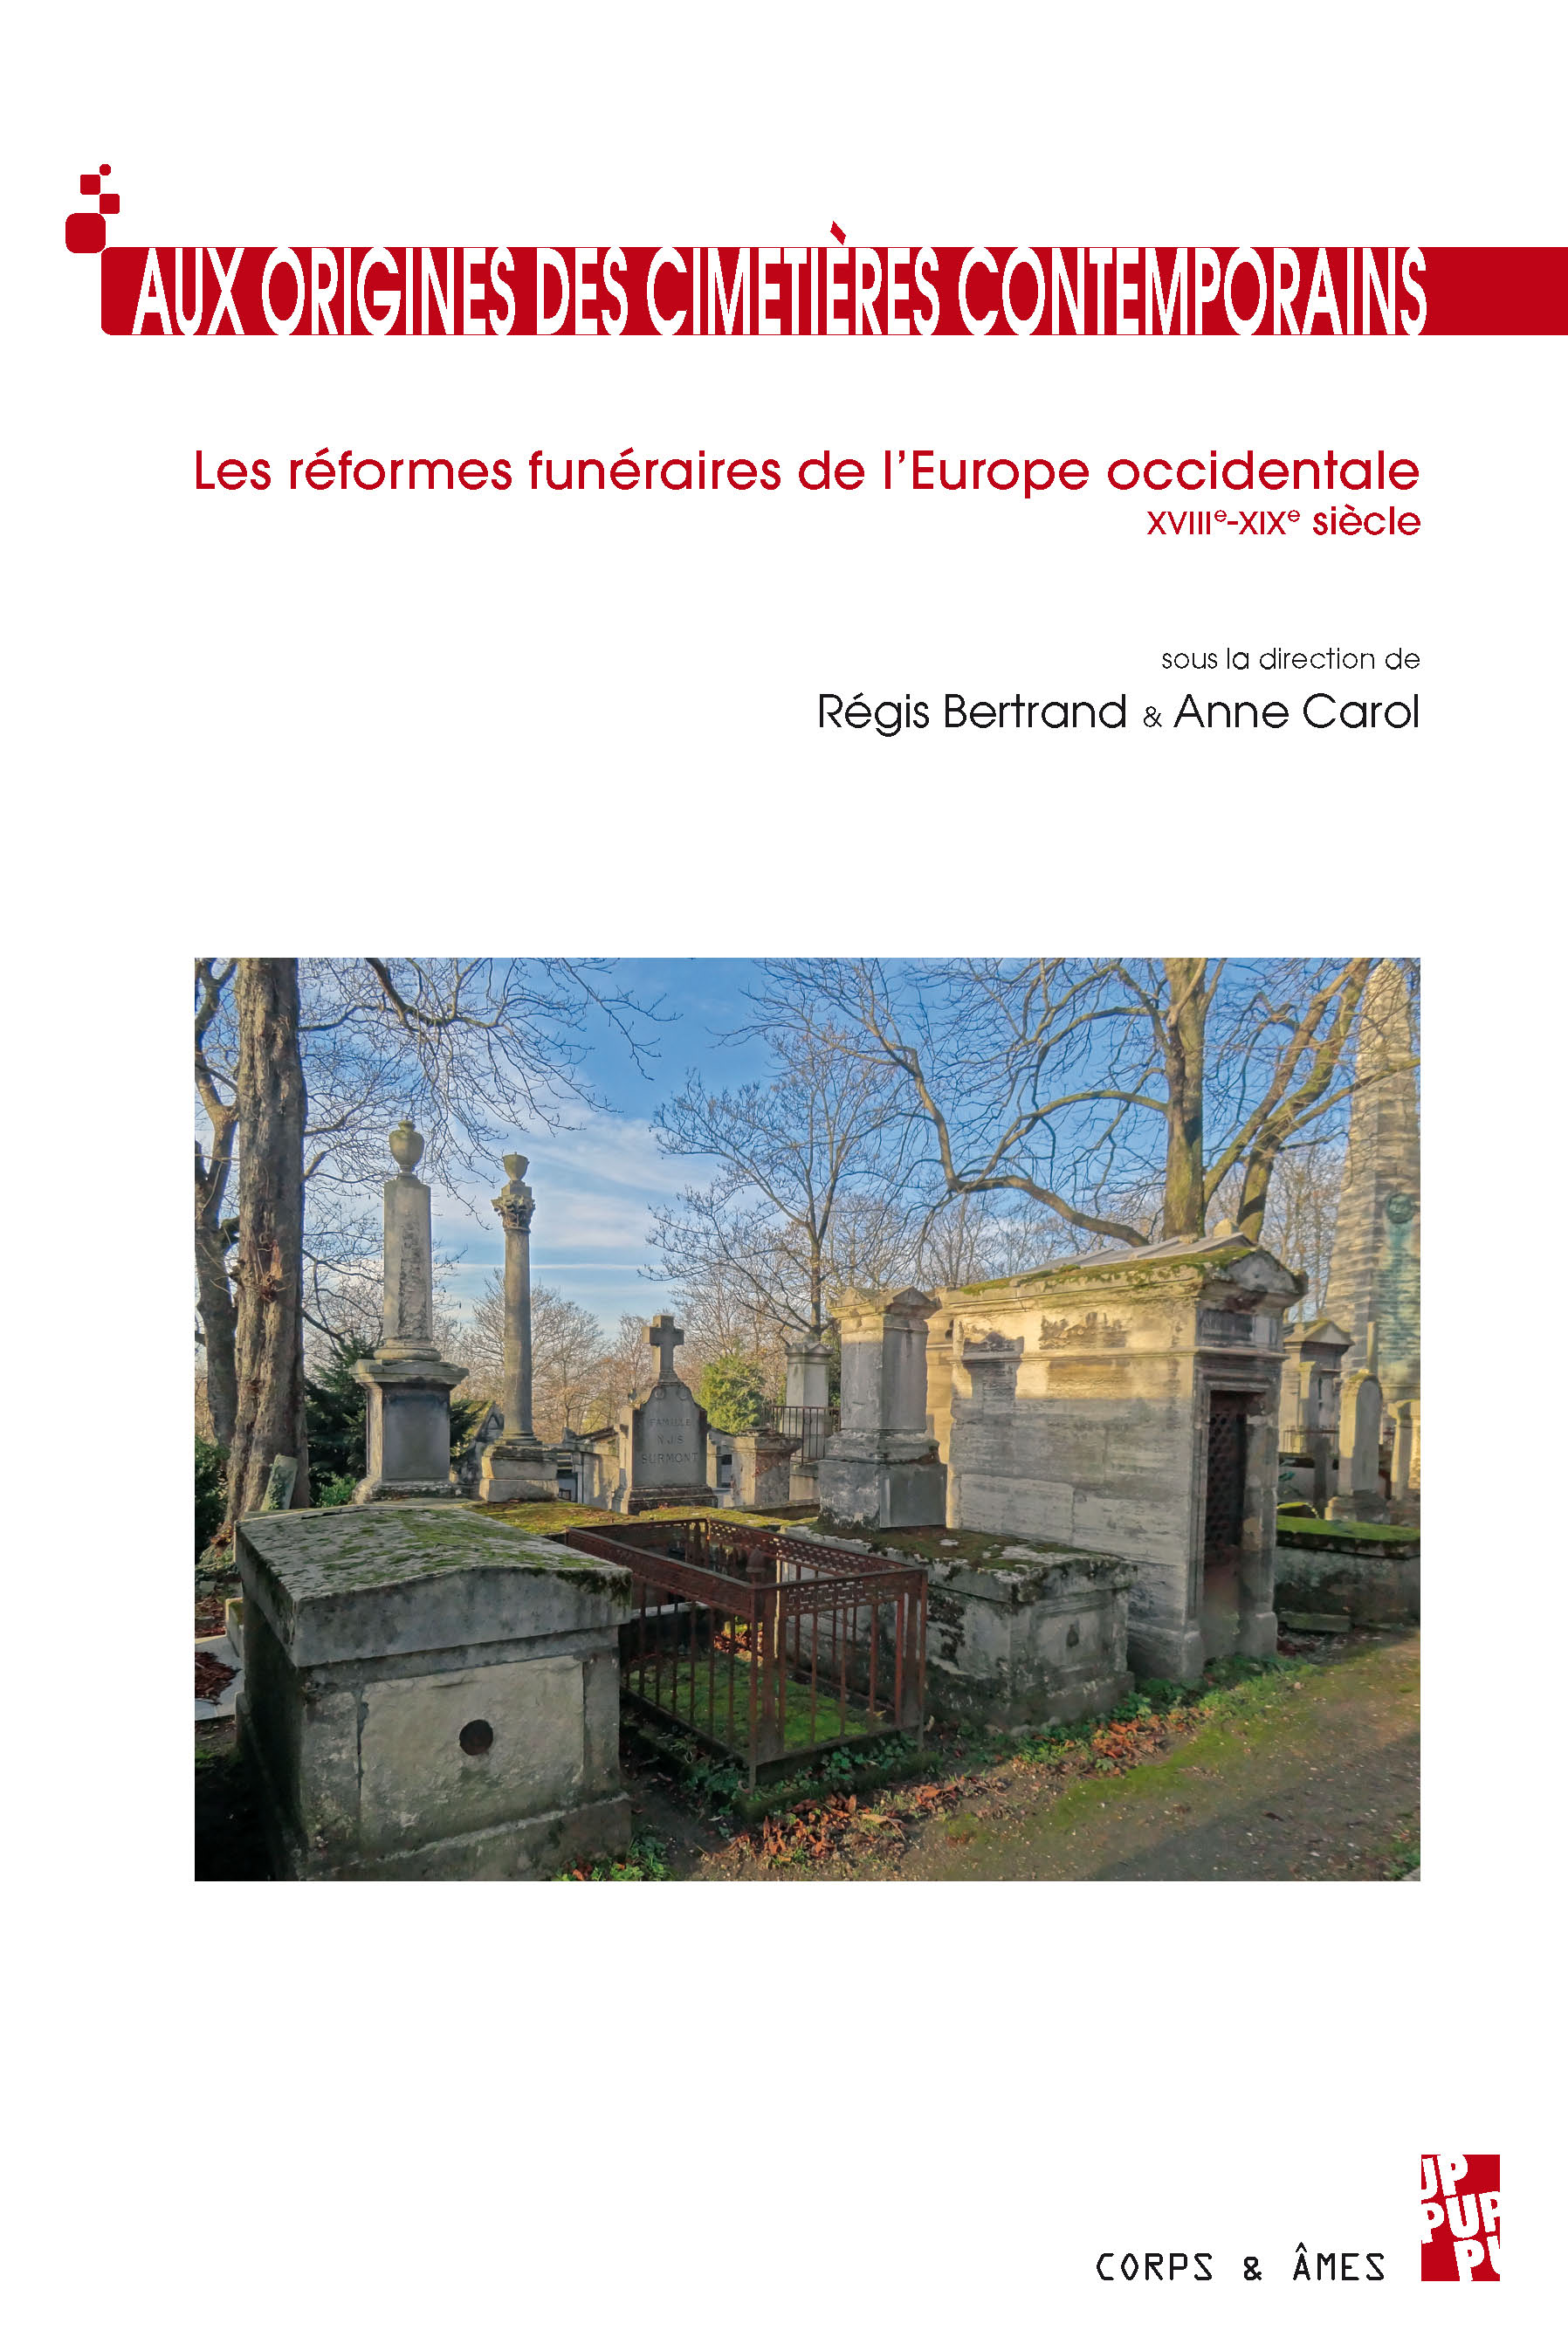 Aux origines des cimetières contemporains. Les réformes funéraires de l'Europe occidentale XVIIIe-XIXe siècle, 2016, 380 p.